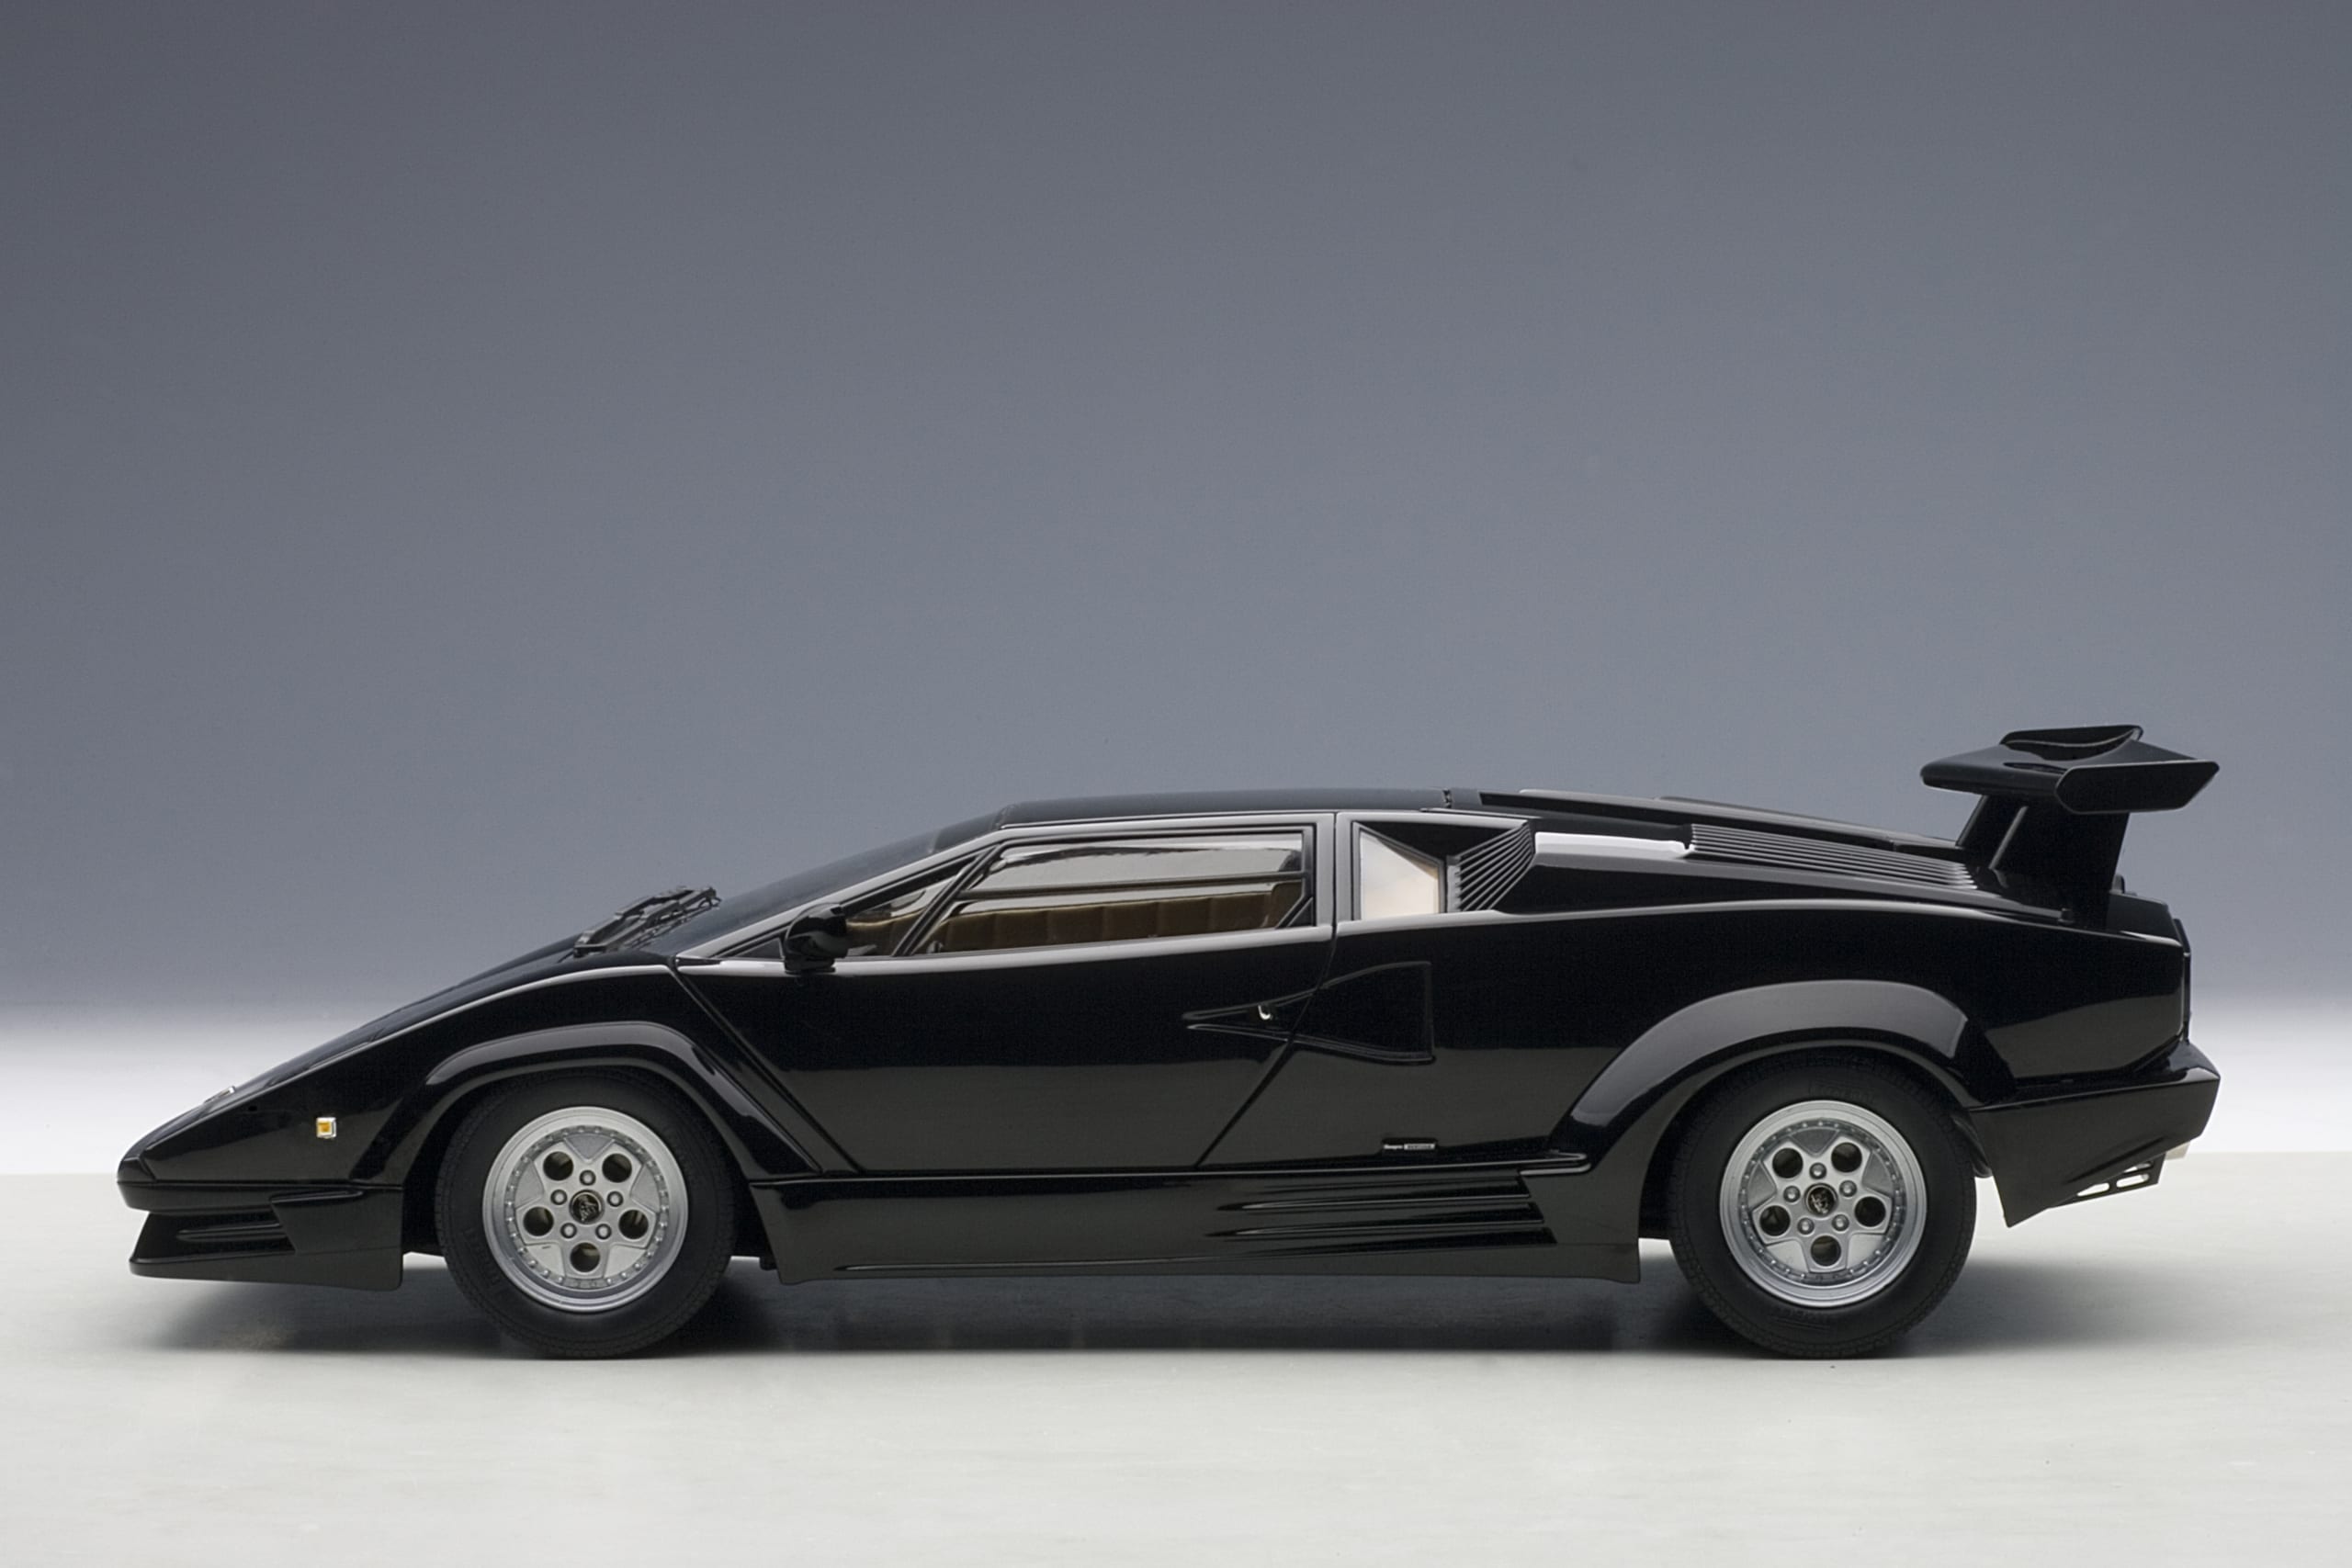 Lamborghini Countach 25th Anniversary Edition (Black) | AUTOart